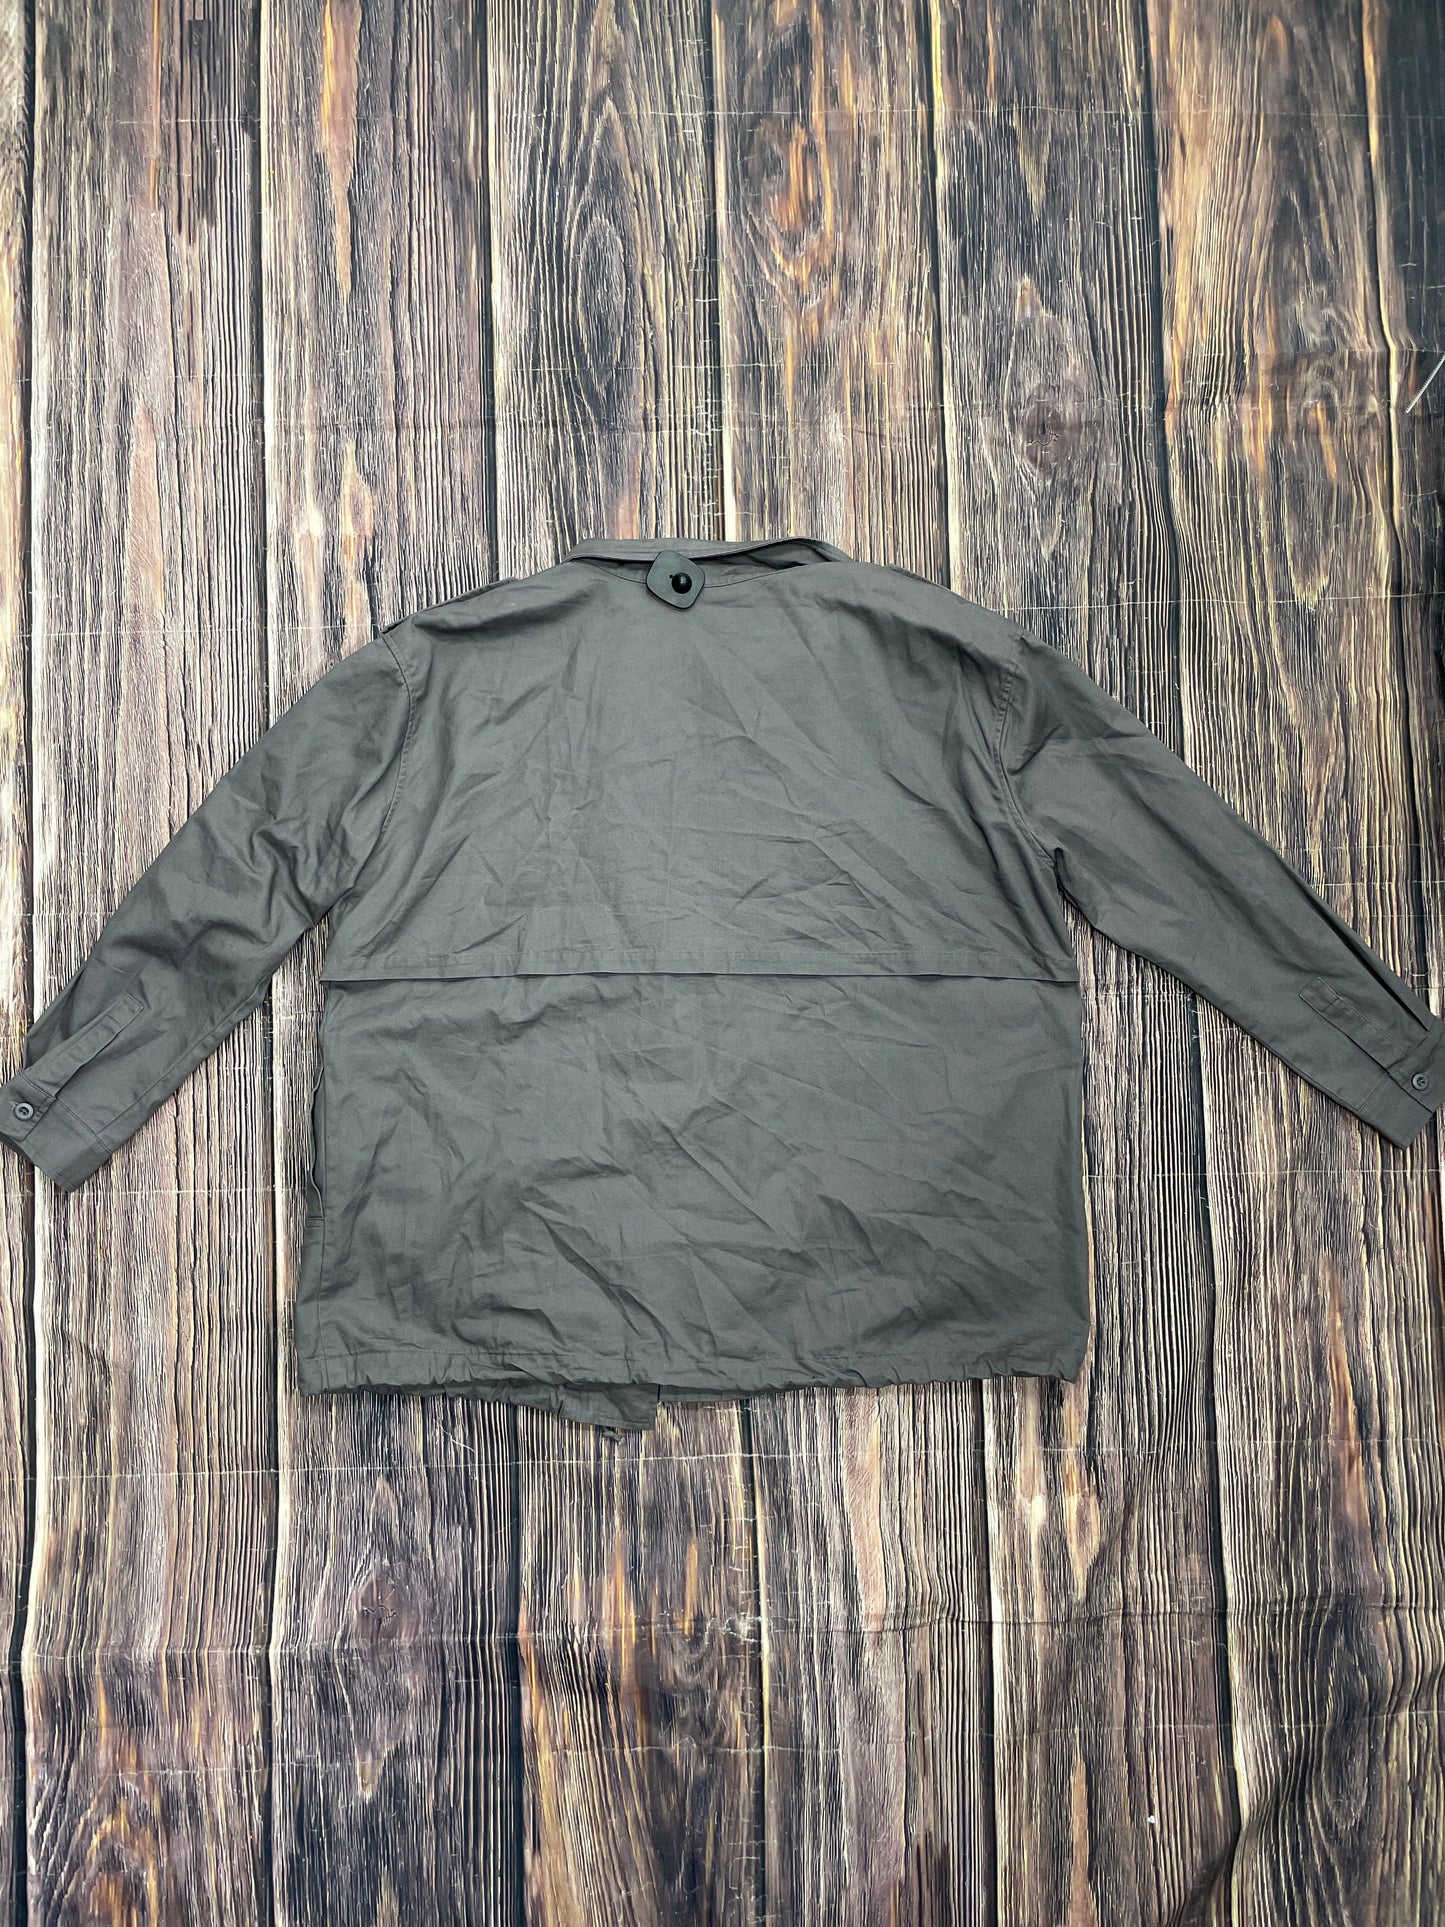 Jacket Utility By Kori America  Size: 1x